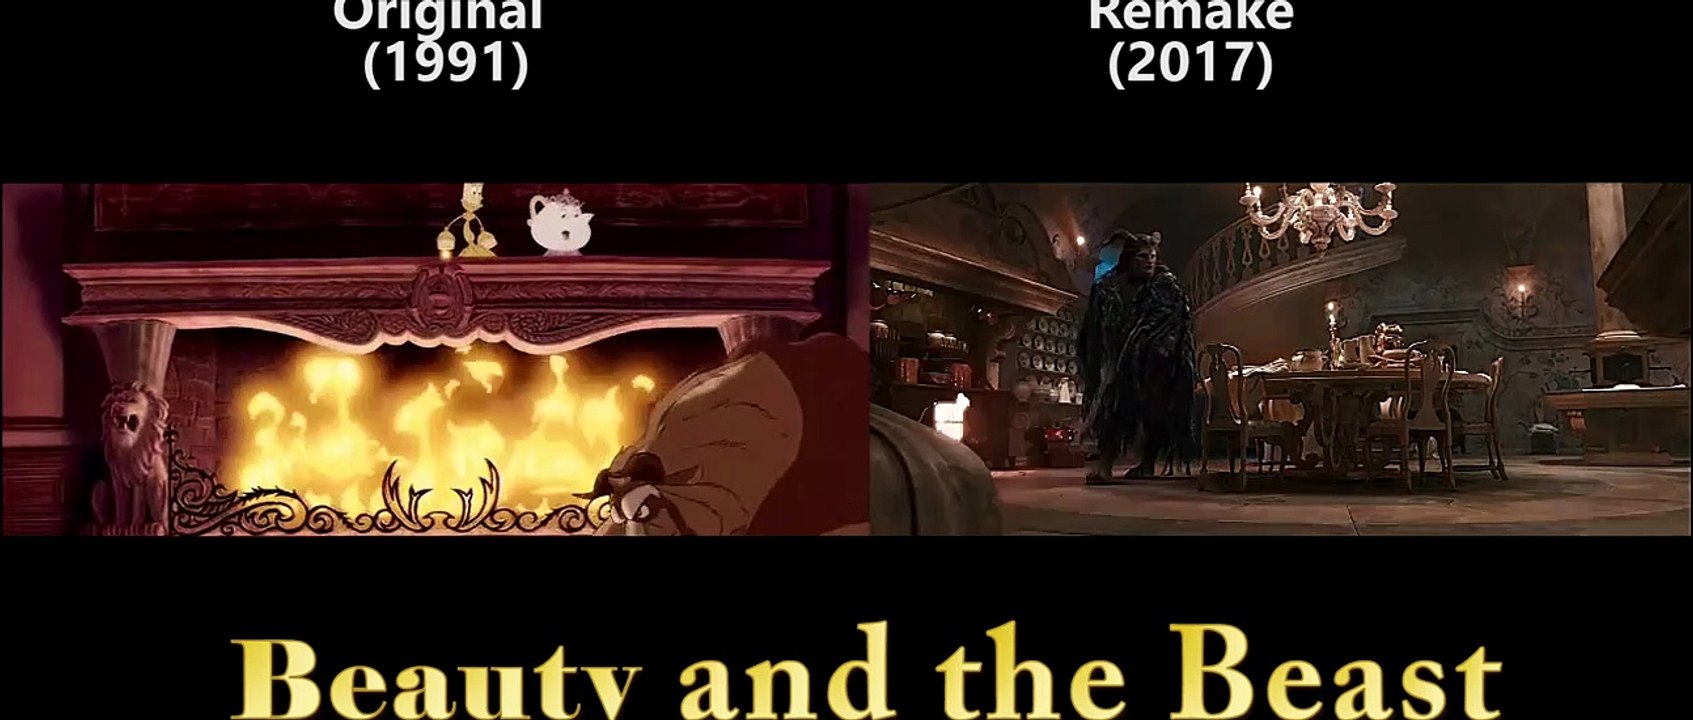 'Die Schöne und das Biest' Original und Remake im Direkt-Vergleich (FS-Video)